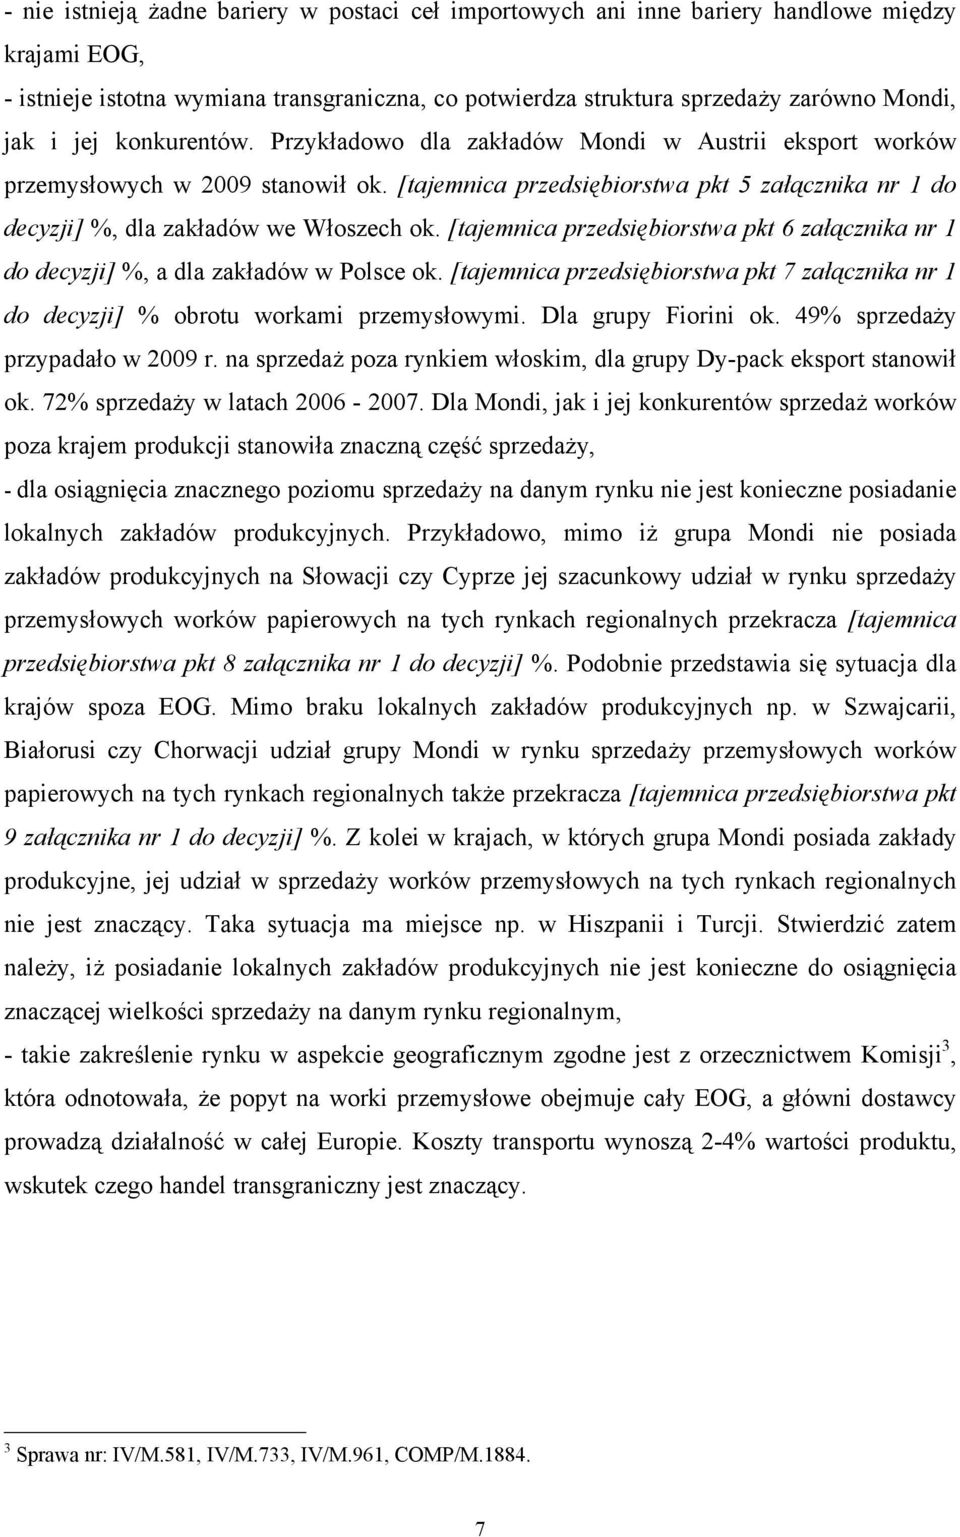 [tajemnica przedsiębiorstwa pkt 6 załącznika nr 1 do decyzji] %, a dla zakładów w Polsce ok. [tajemnica przedsiębiorstwa pkt 7 załącznika nr 1 do decyzji] % obrotu workami przemysłowymi.